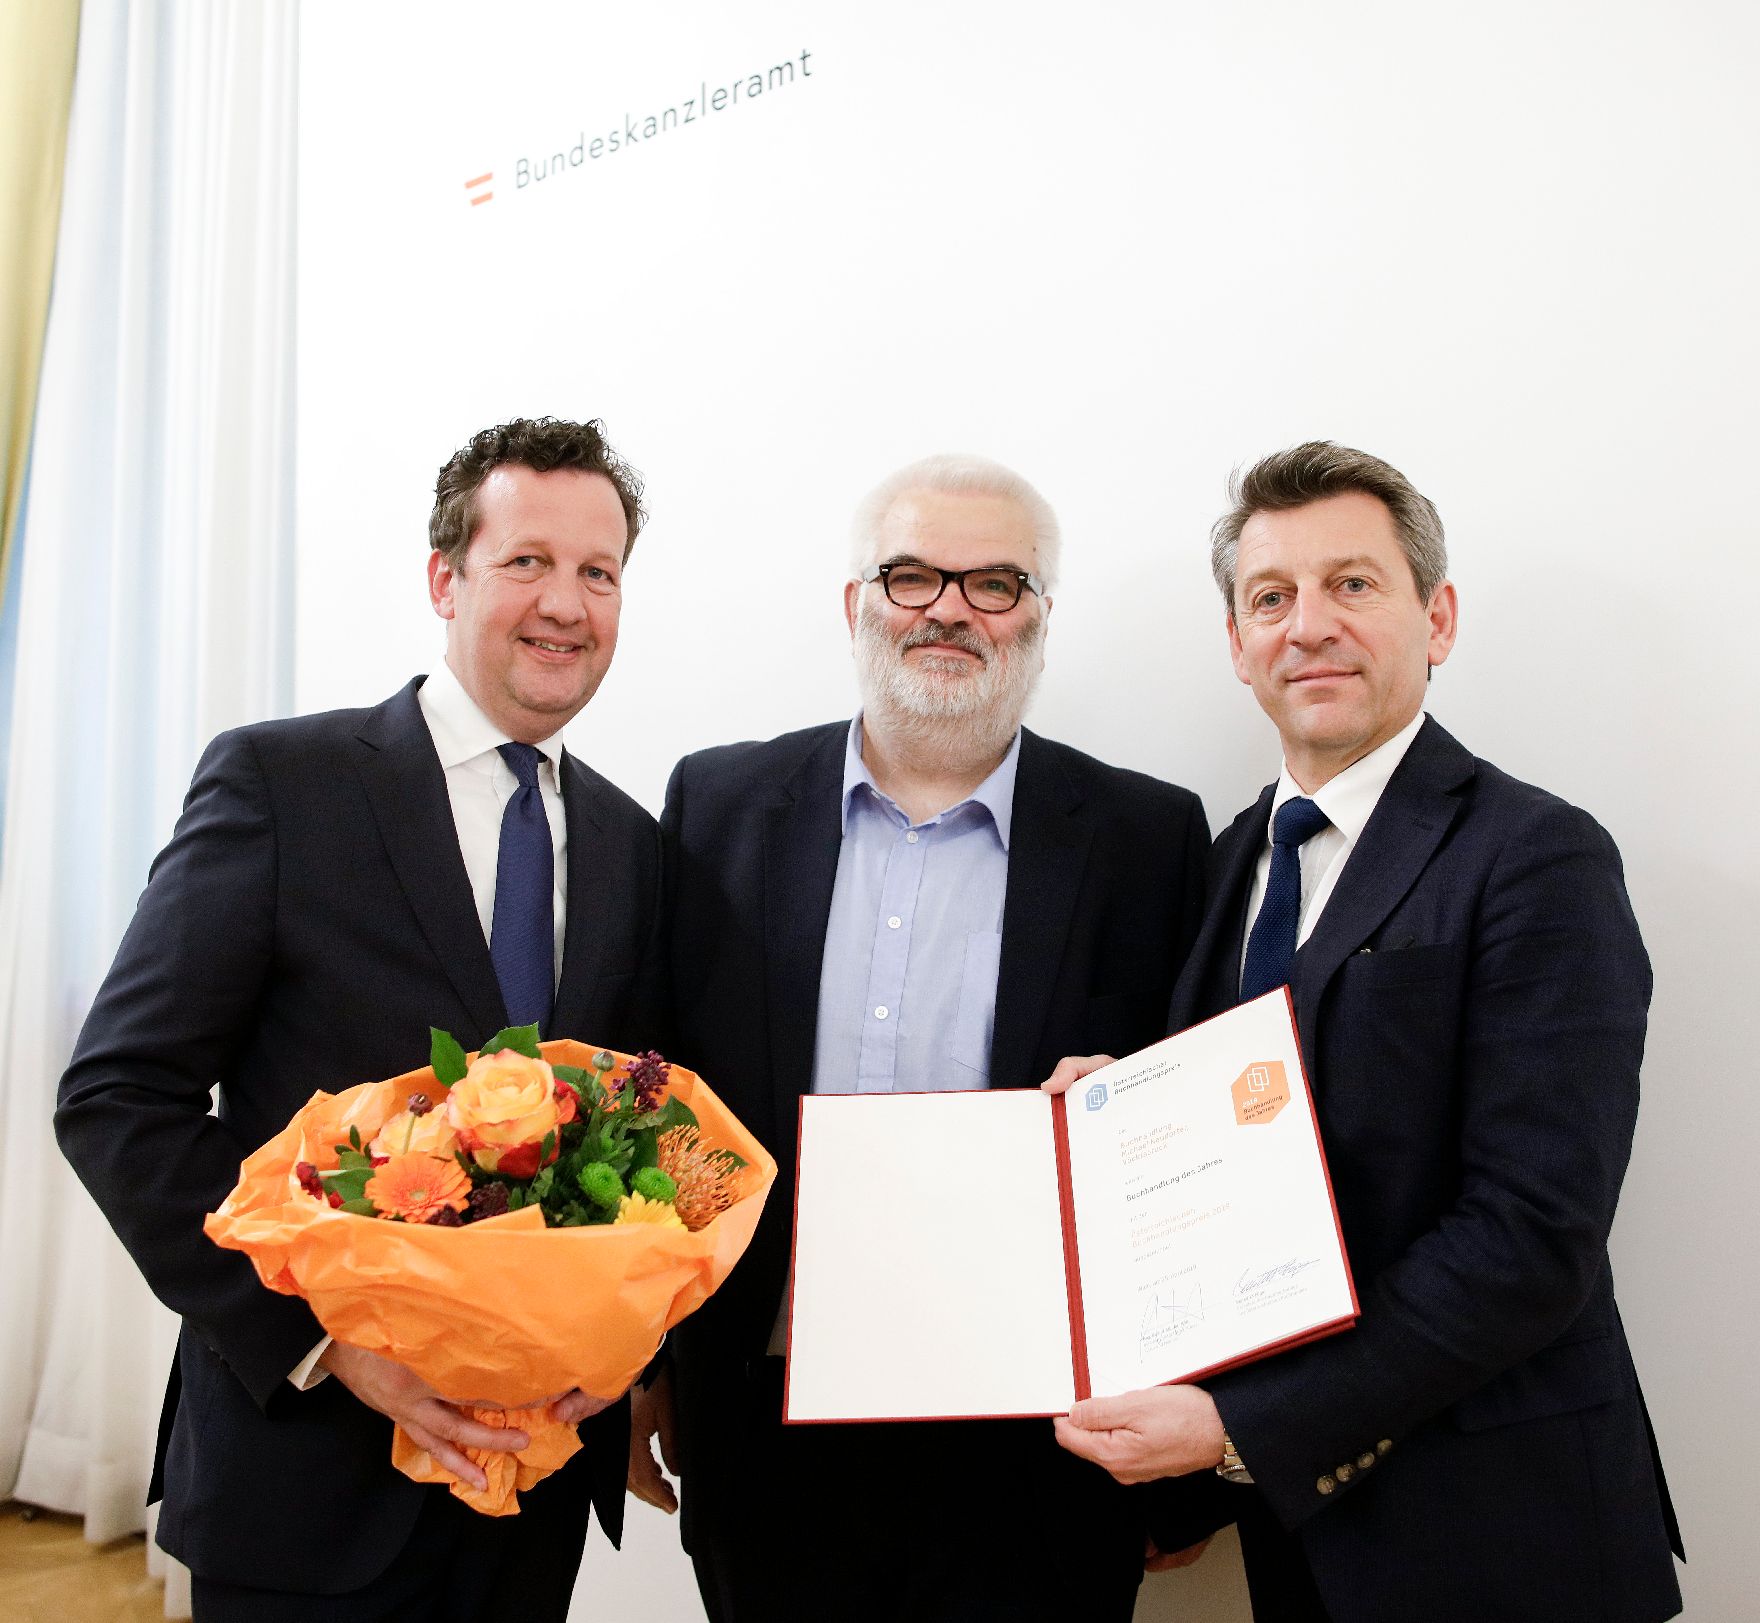 Am 25. April 2019 fand die Überreichung der Österreichischen Buchhandlungspreise durch Sektionschef Jürgen Meindl (r.) und den Präsident des Hauptverbandes des Österreichischen Buchhandels, Benedikt Föger (l.) statt.